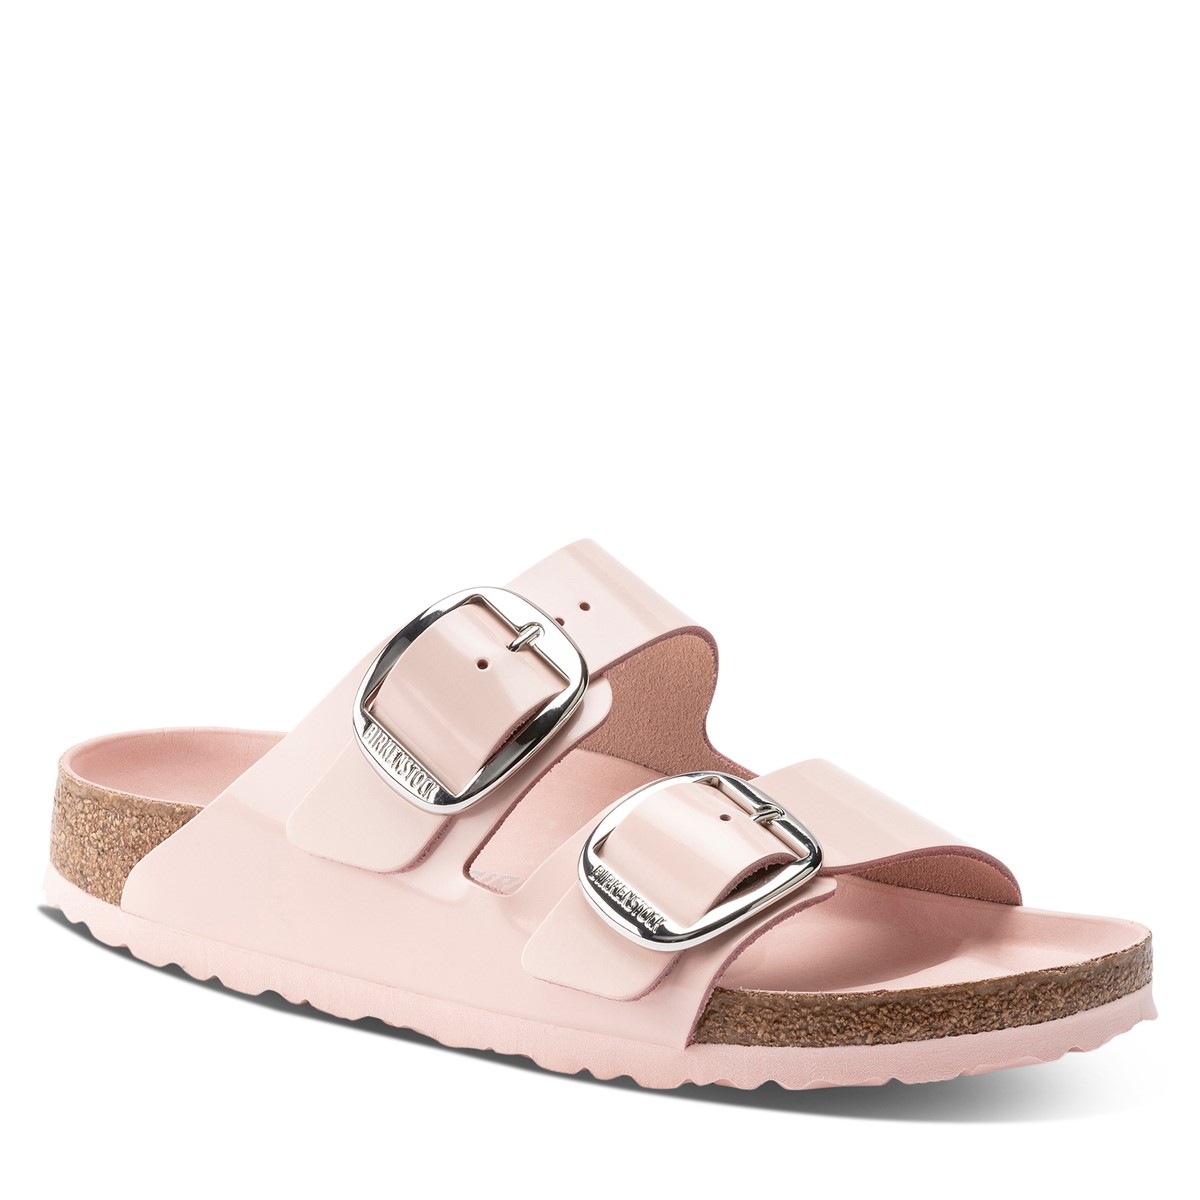 Women's Arizona Big Buckle Sandals in Pink